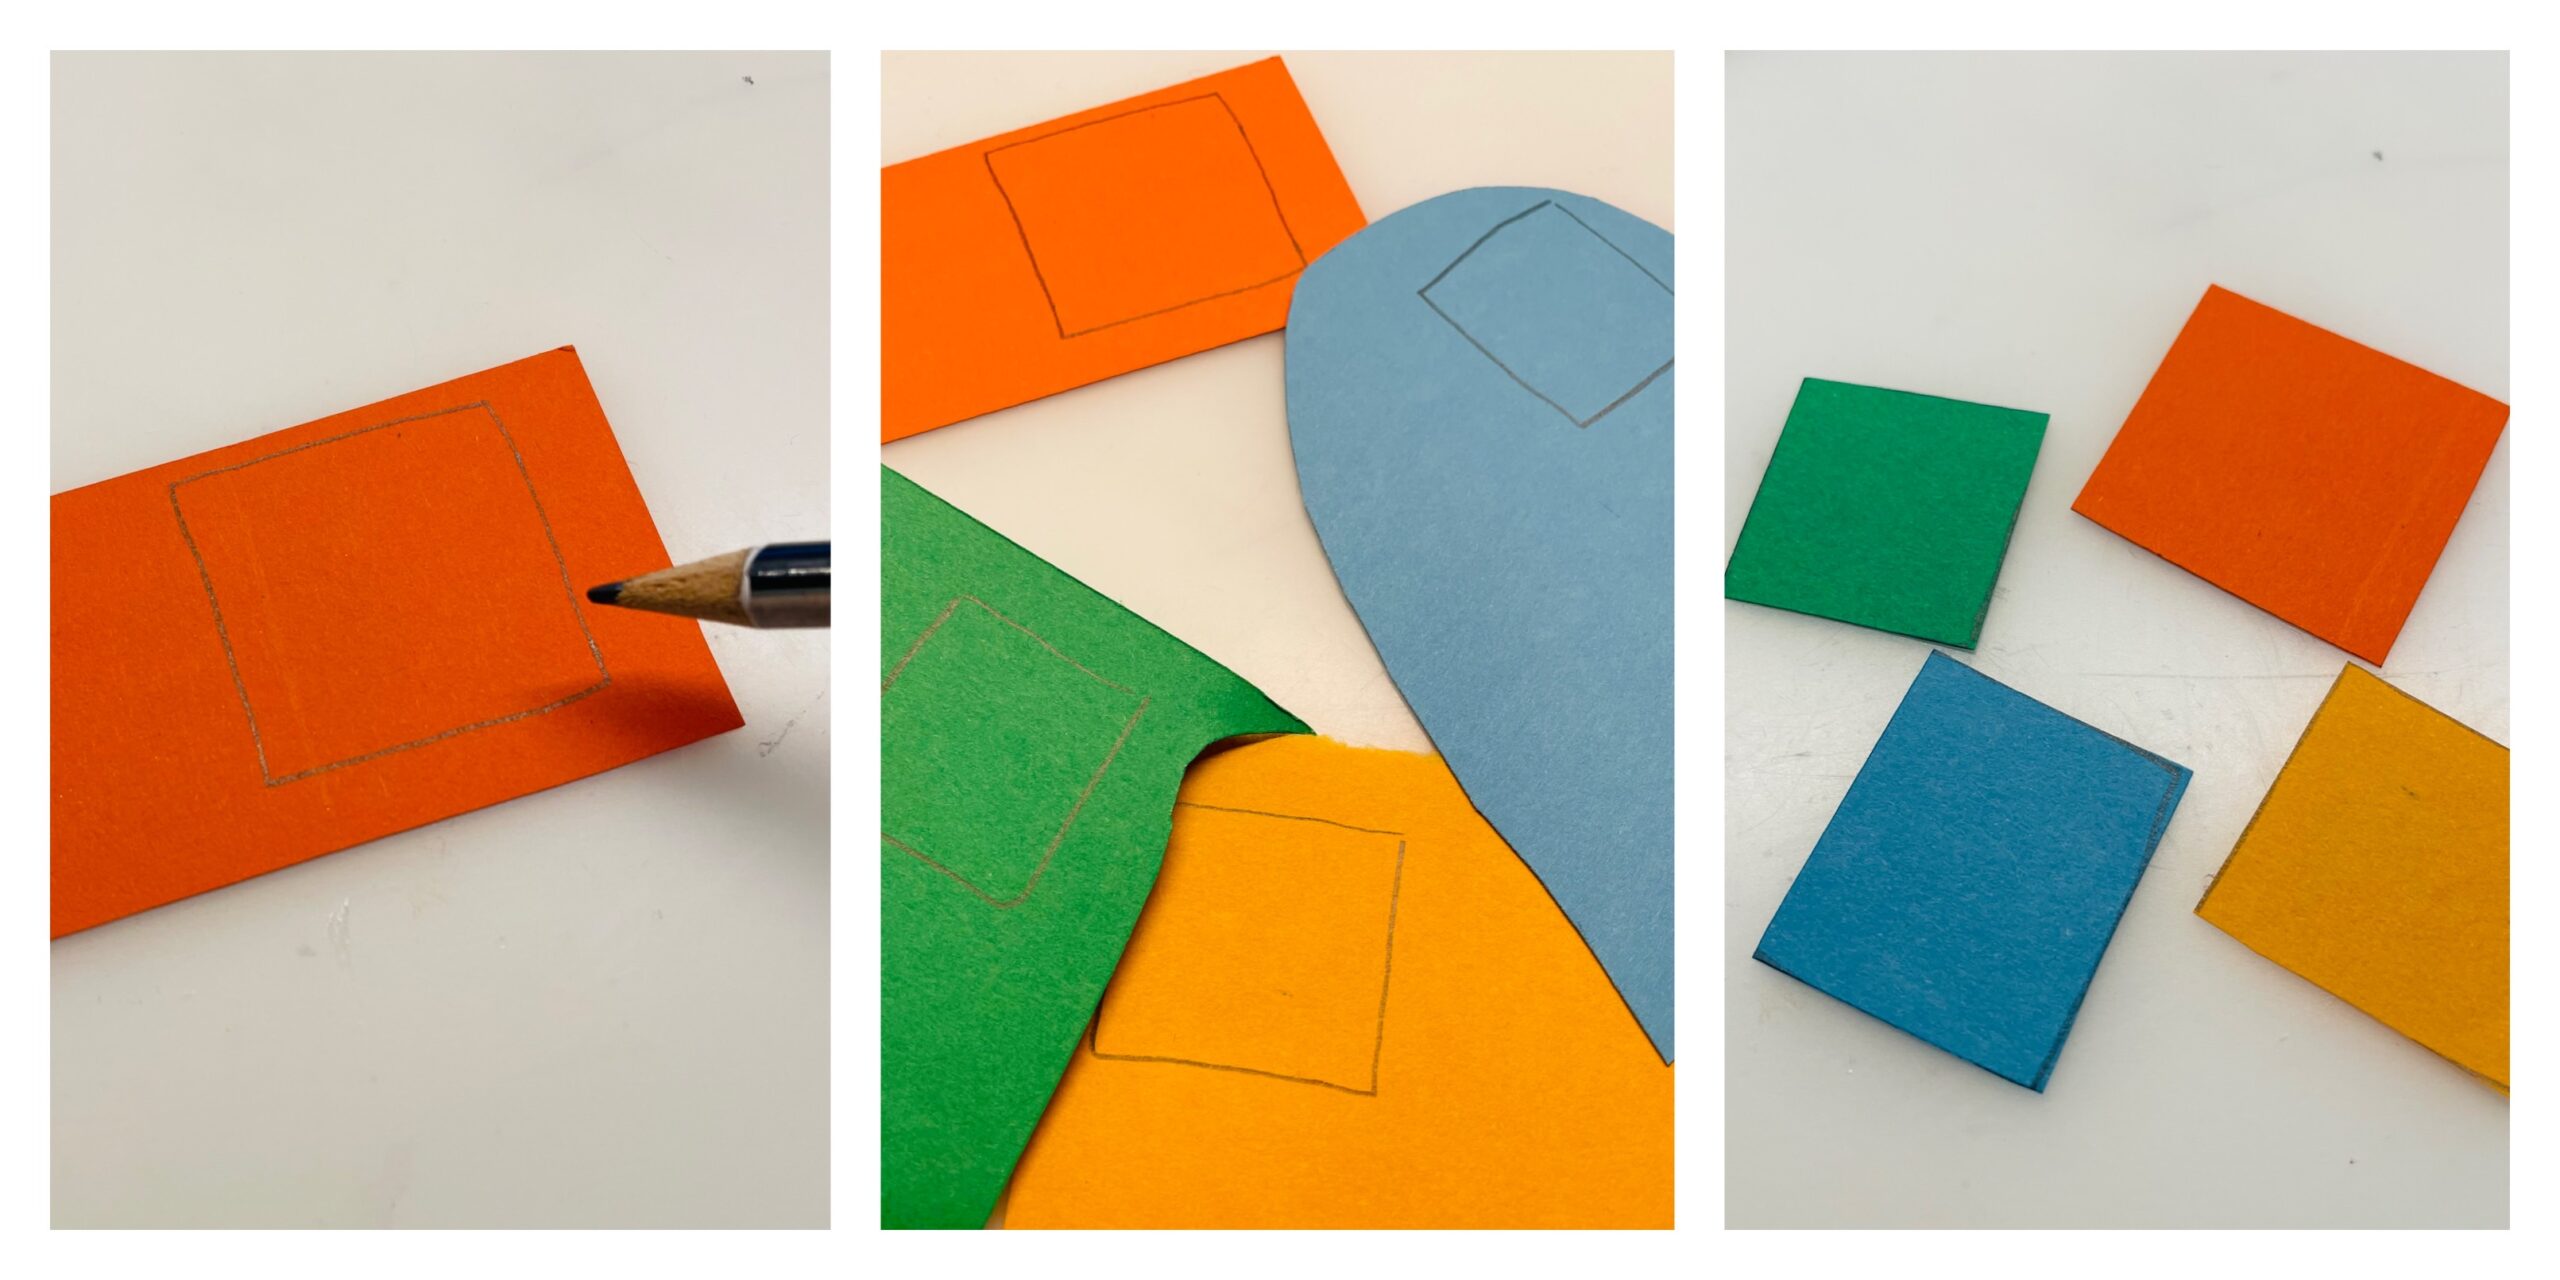 Bild zum Schritt 2 für das Bastel- und DIY-Abenteuer für Kinder: 'Zuerst malt ihr kleine Vierecke als Fenster auf und schneidet...'